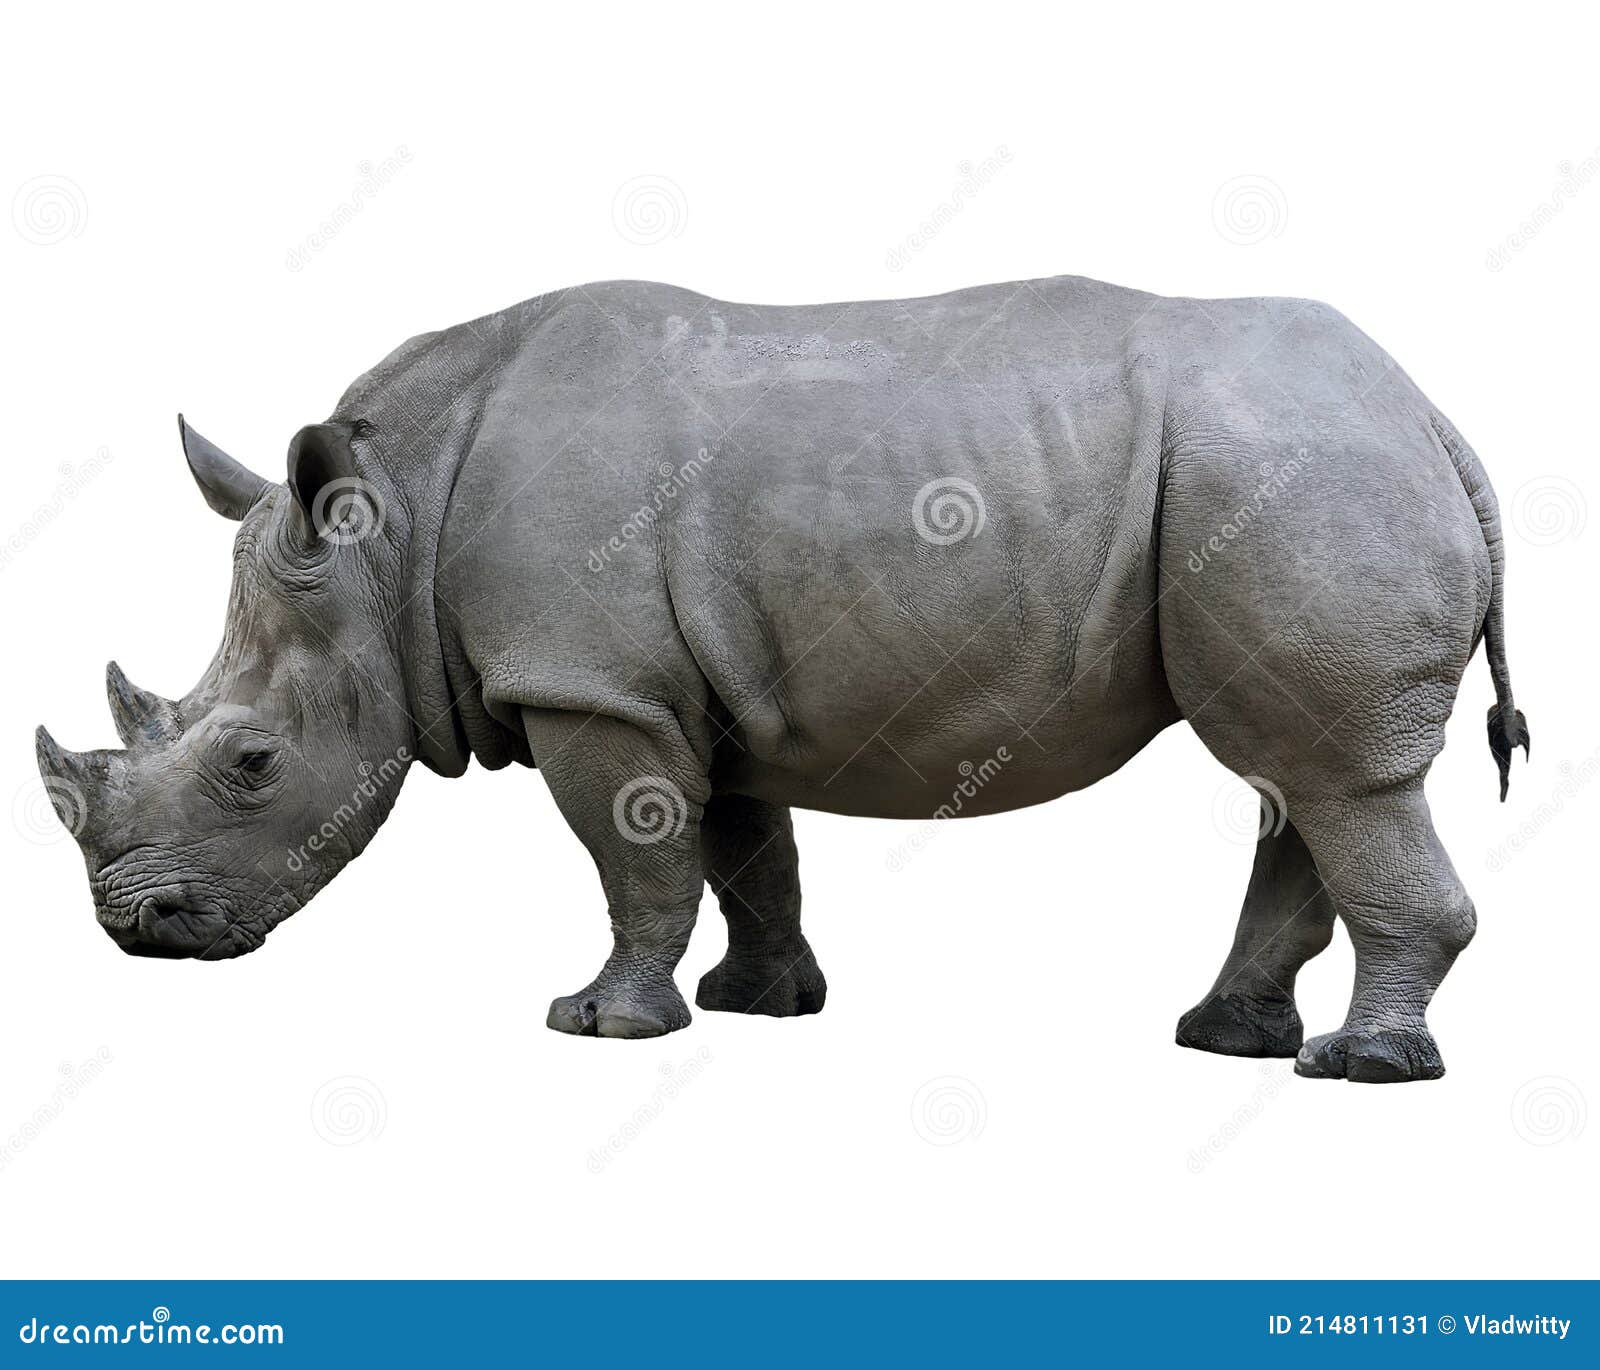 Rhino Nose Two Horn Isolated on White Background Stock Image - Image of  background, isolation: 214811131